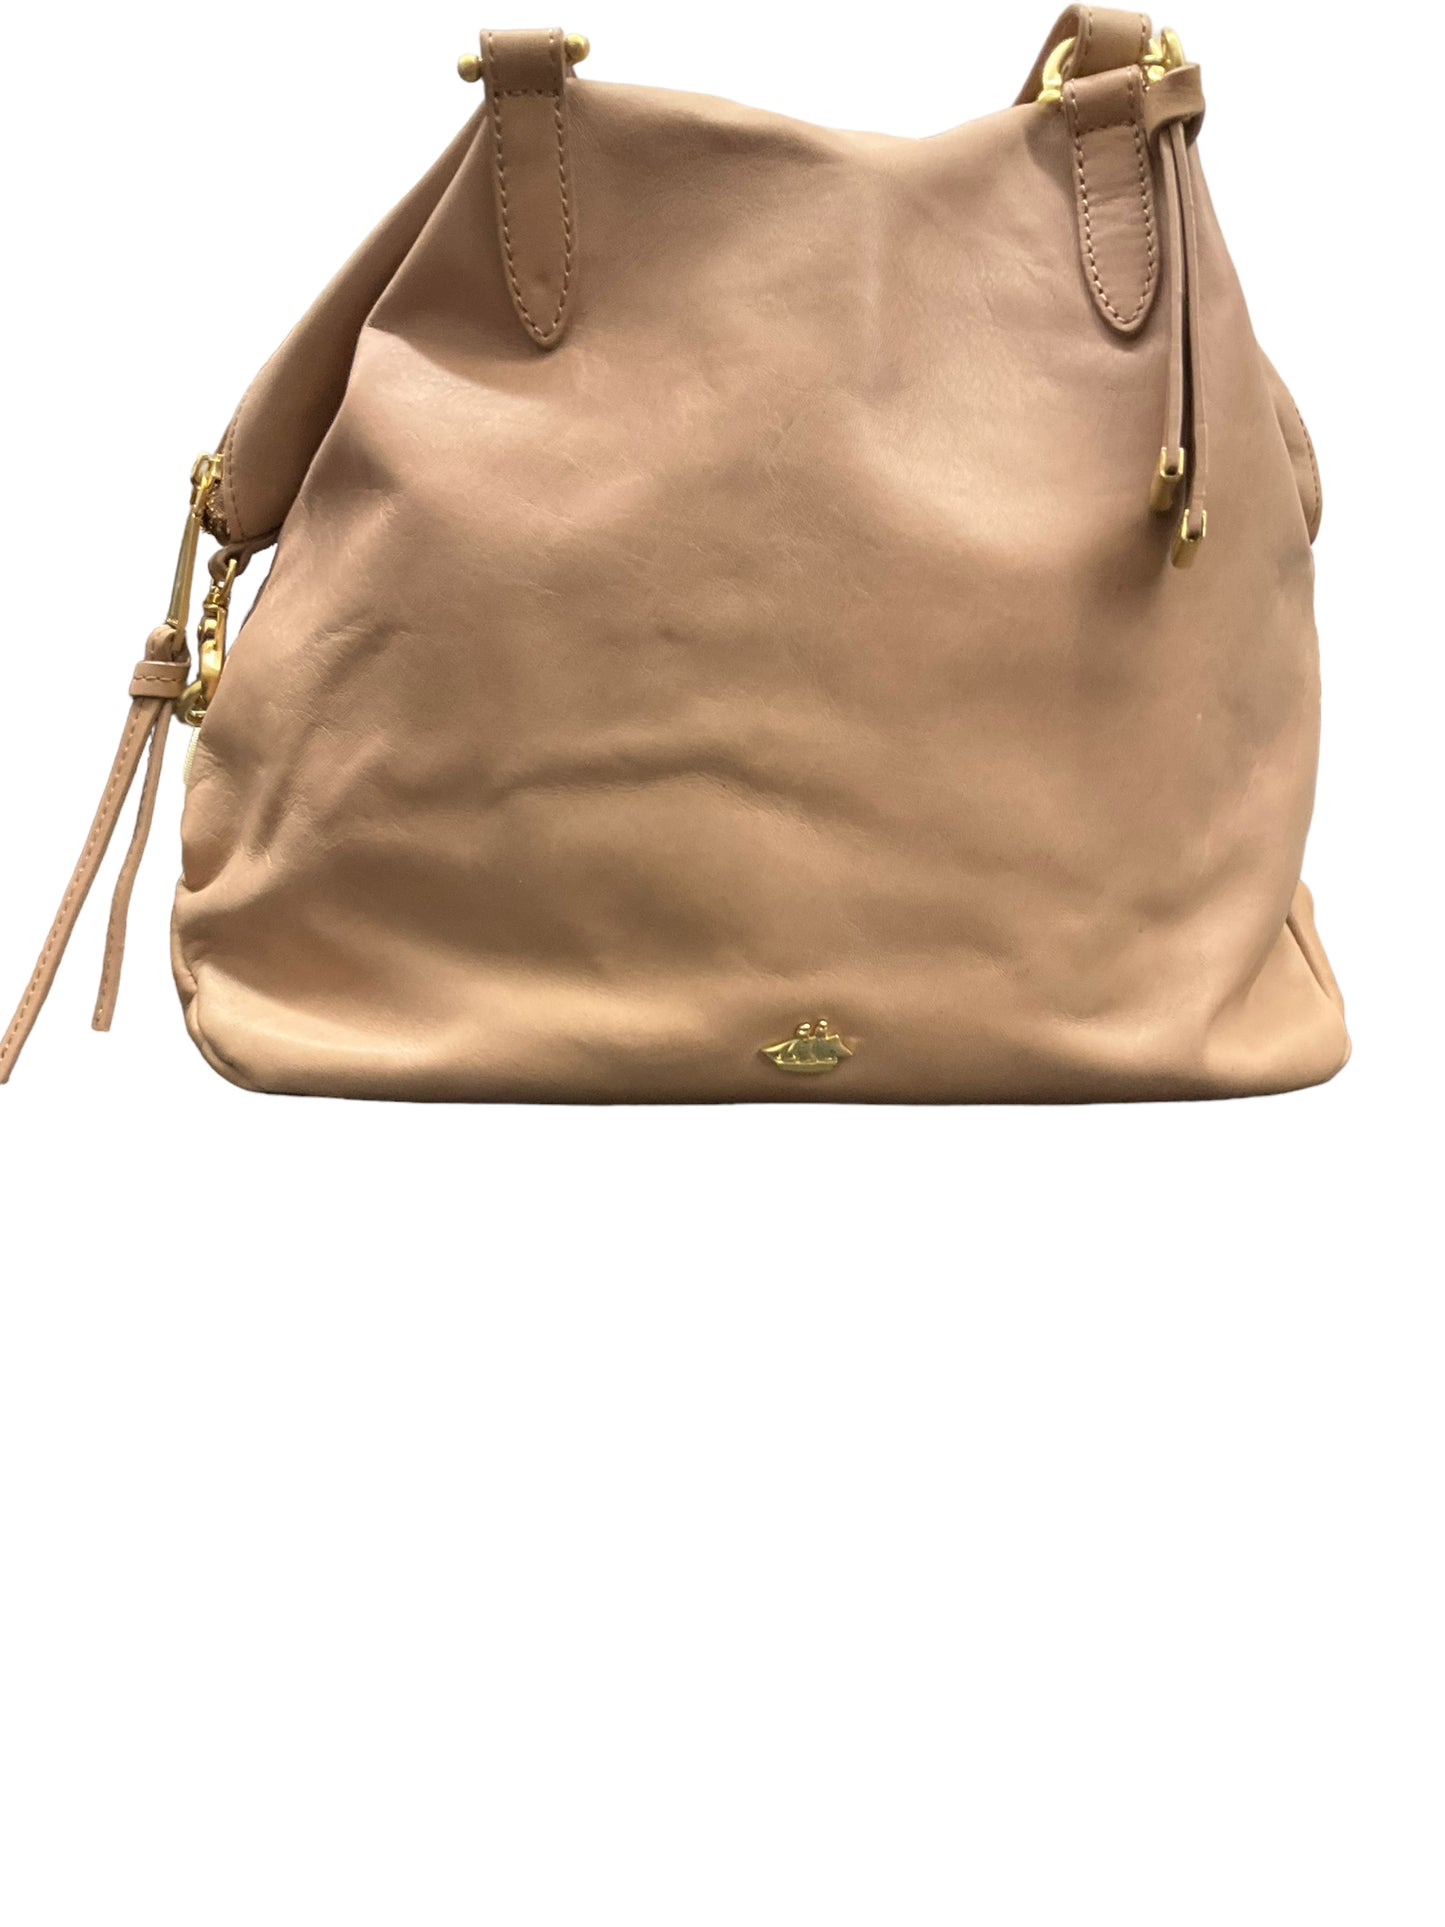 Handbag Designer By Brahmin Size: Large